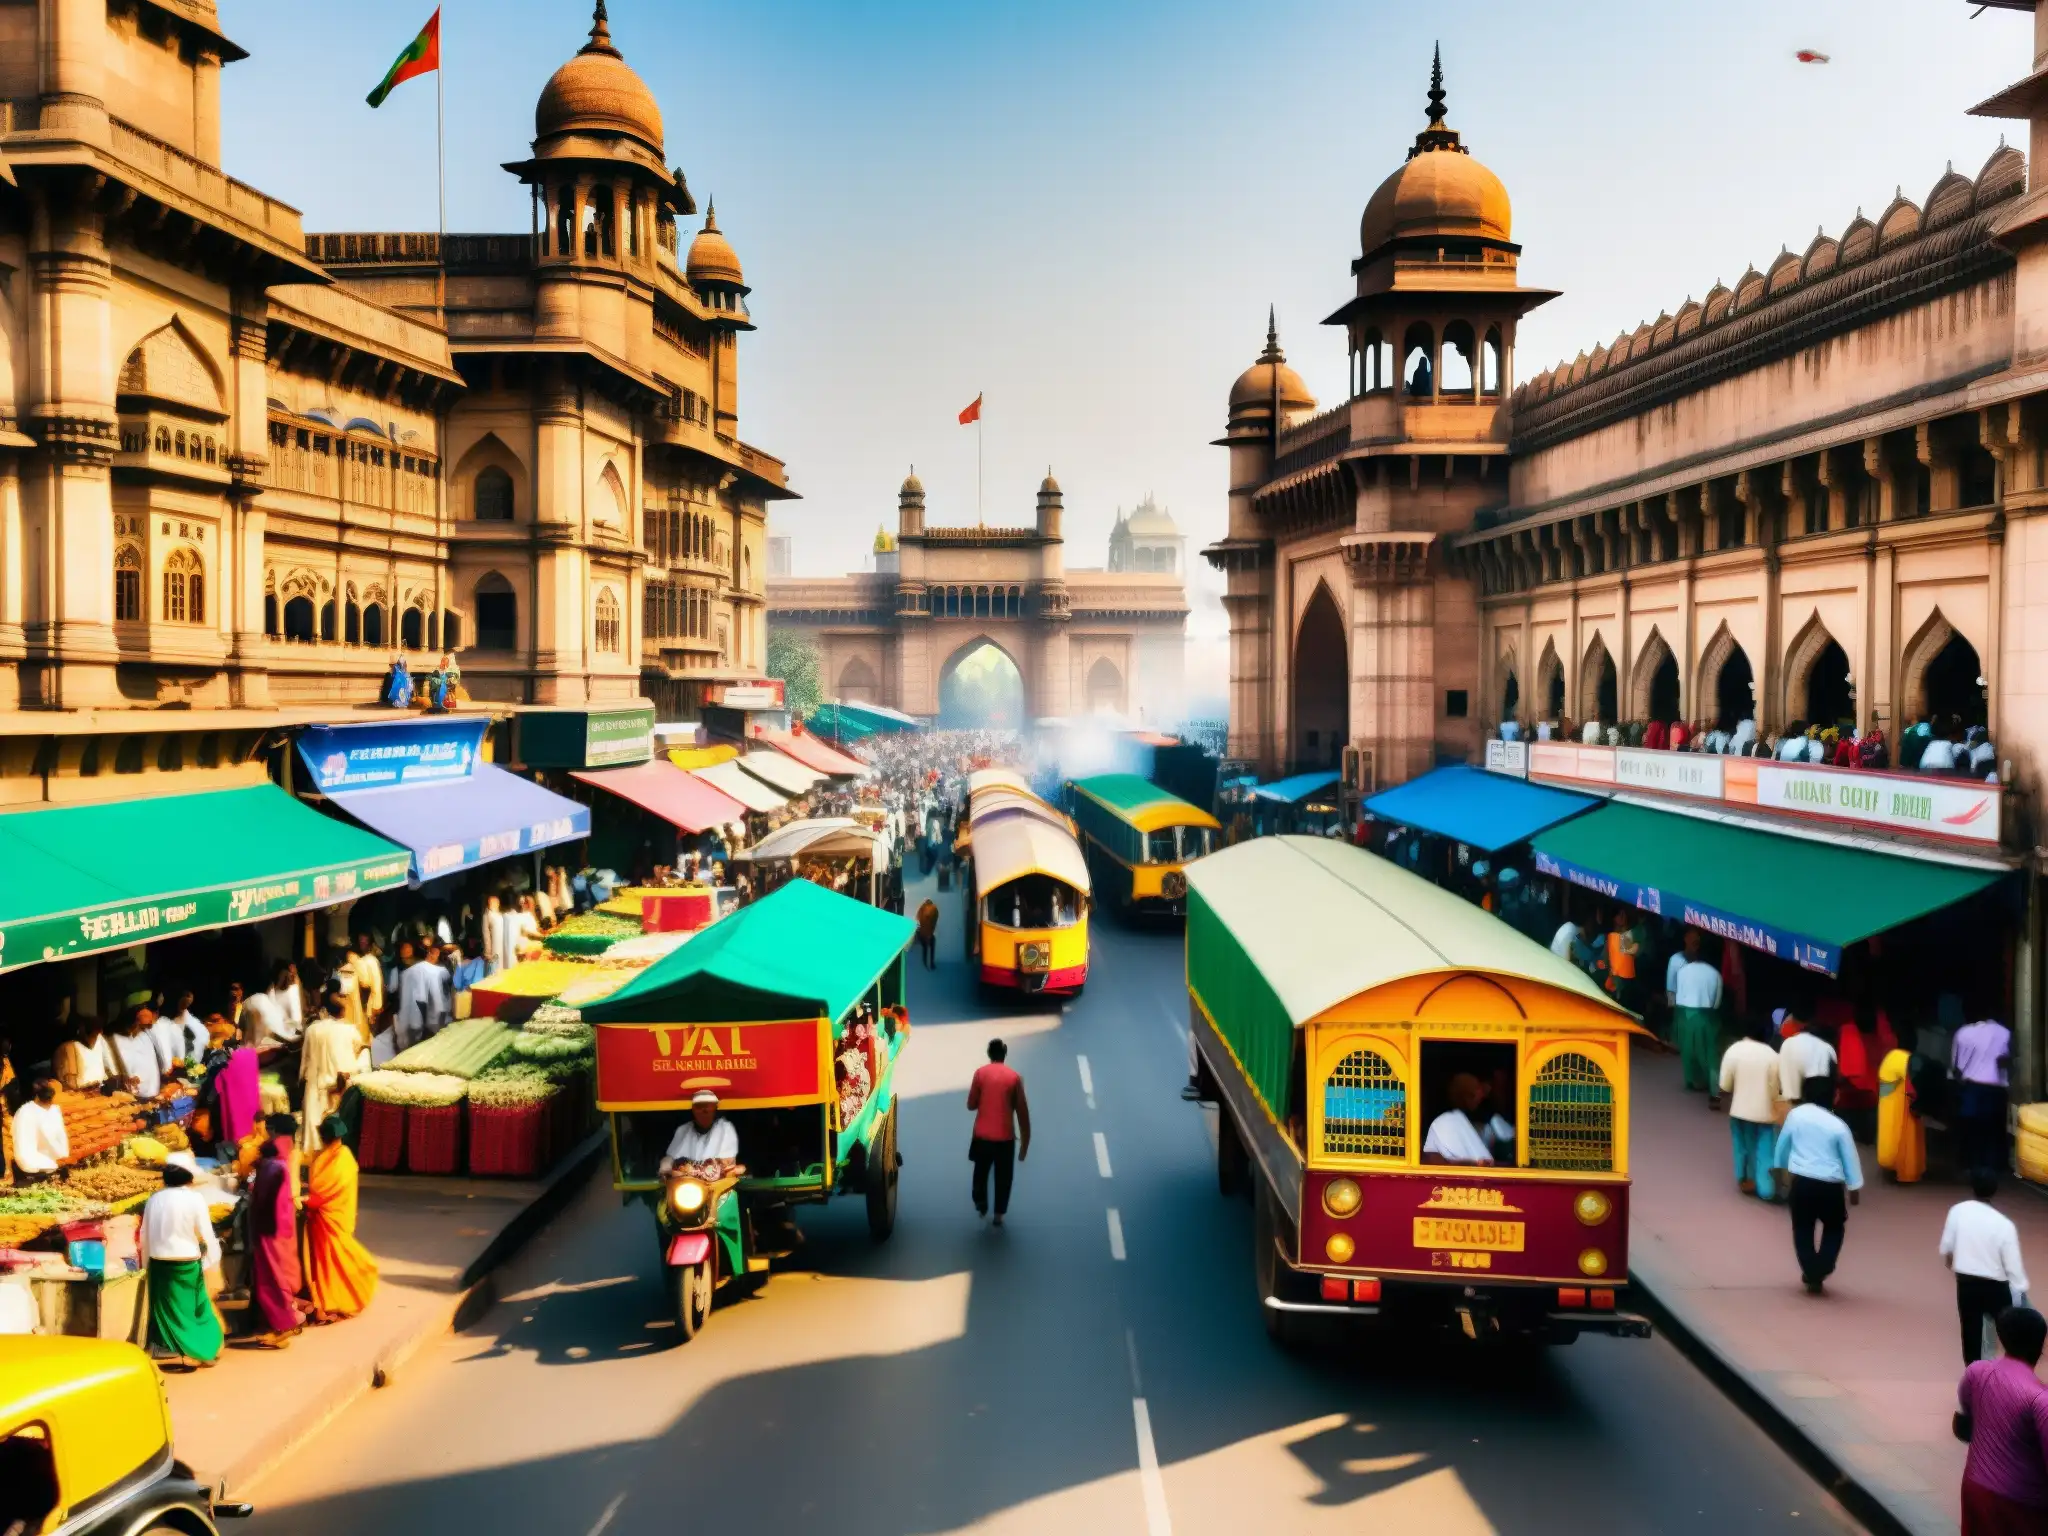 Vibrante escena callejera en Bombay, India, con colores y gente diversa, capturando la energía y riqueza cultural de la ciudad